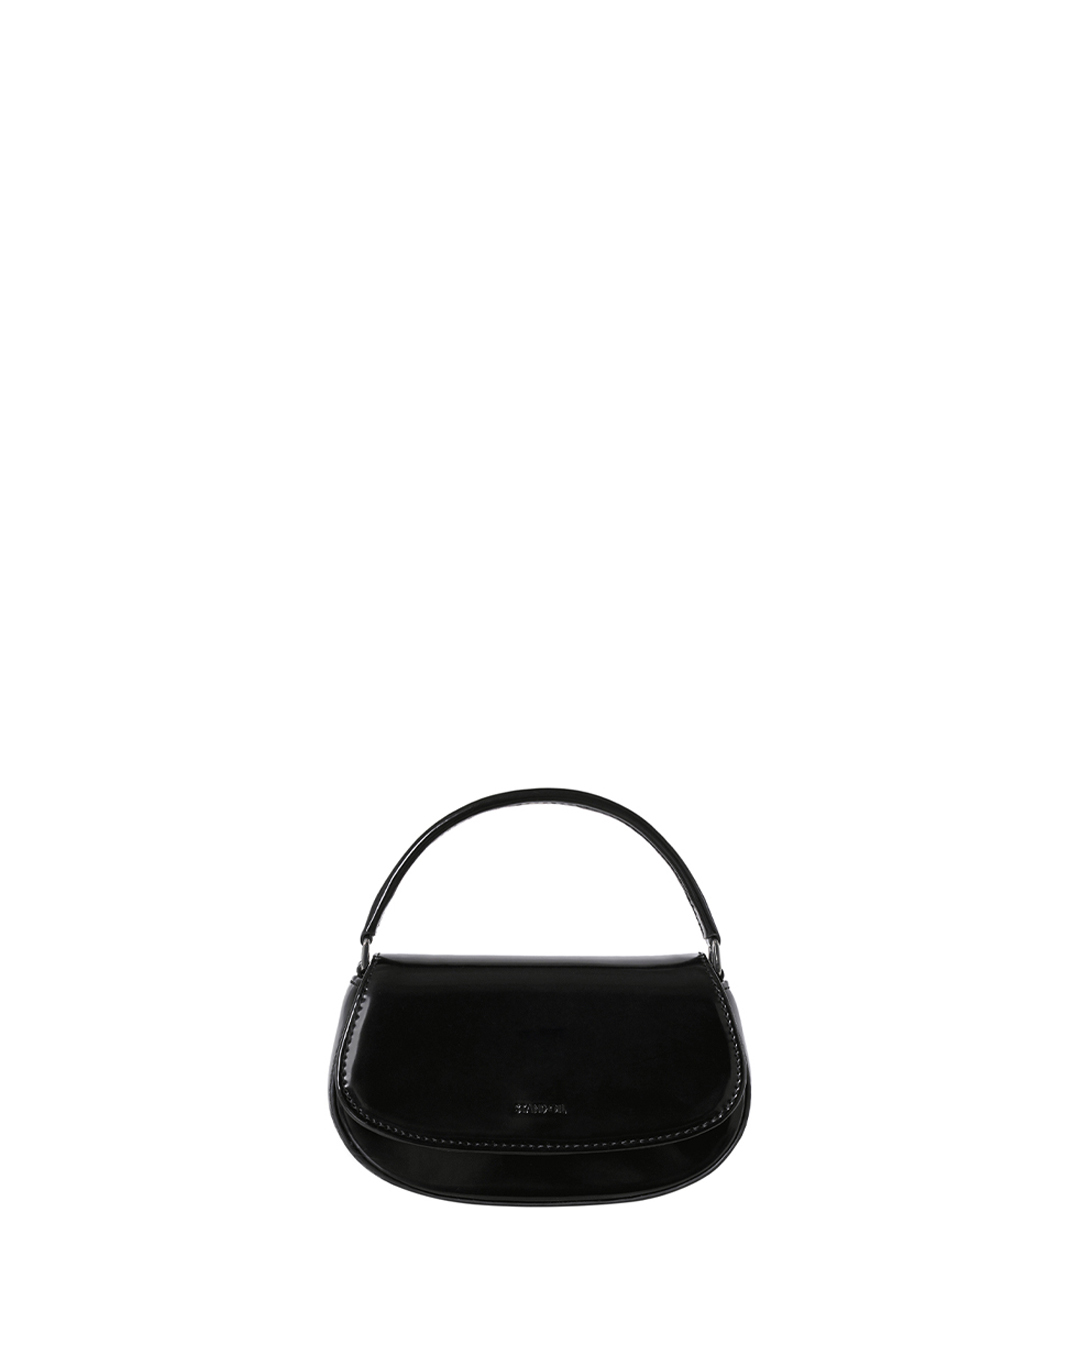 韓國STAND OIL-Clam Bag Tiny / Black